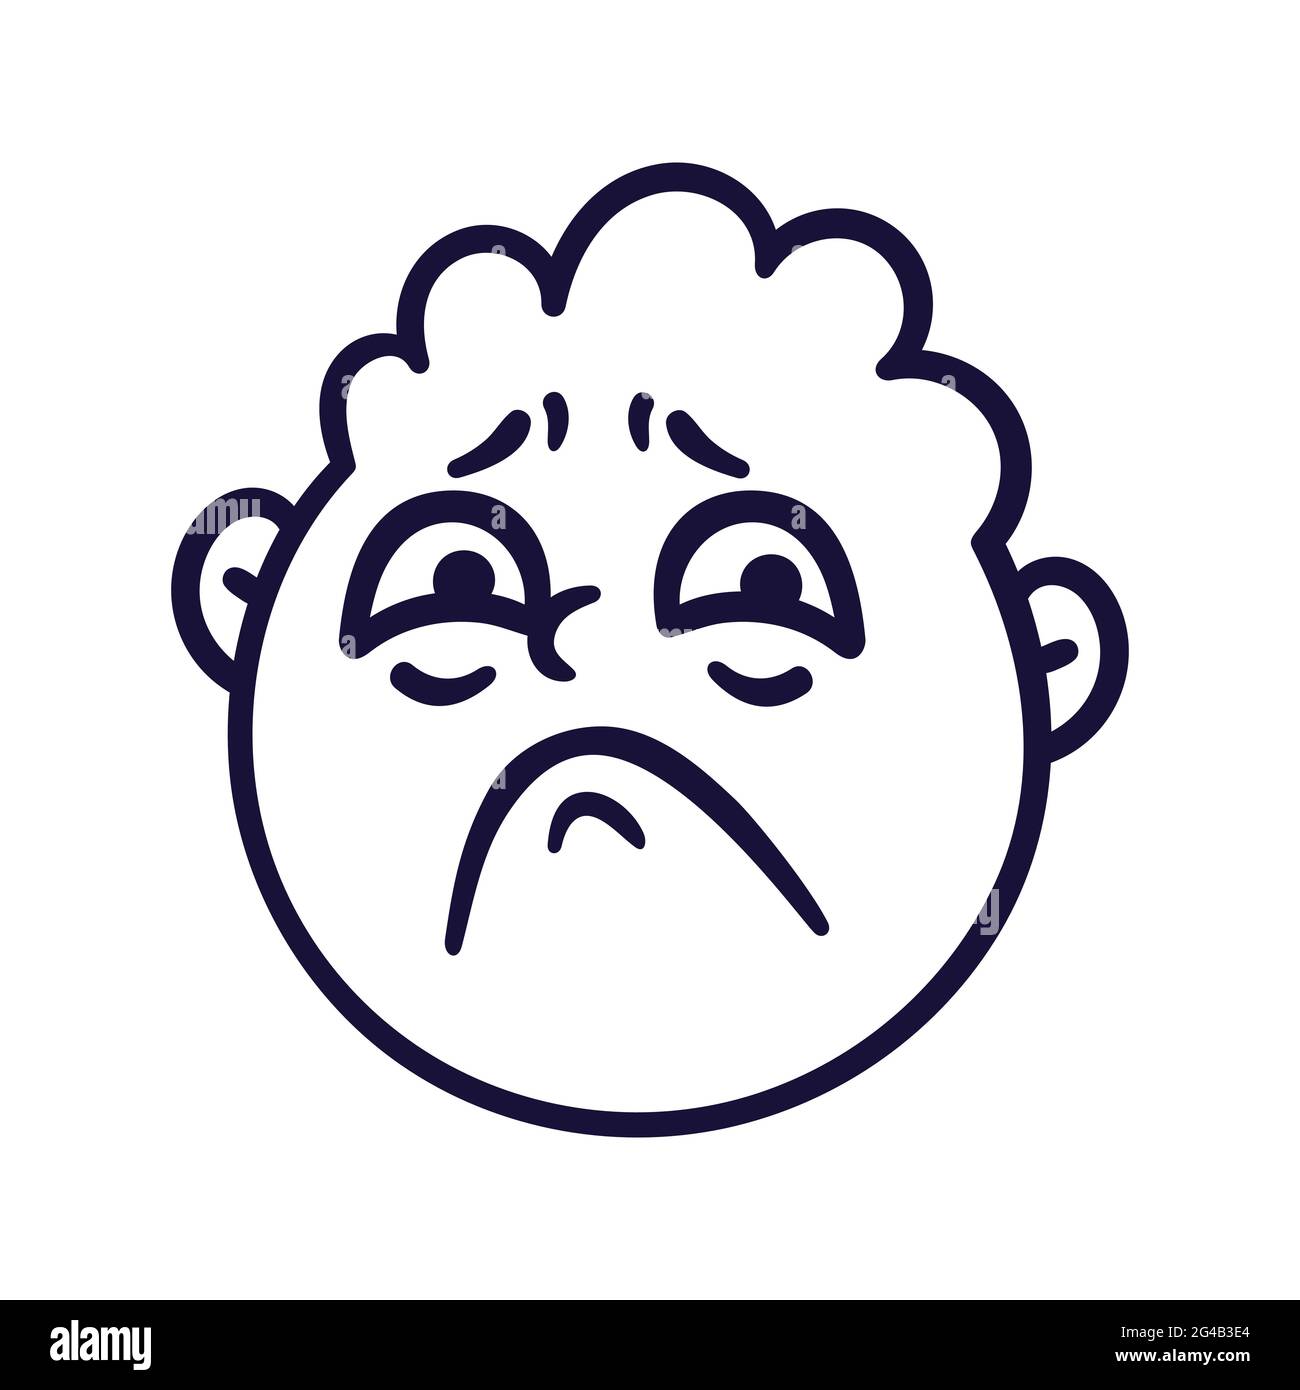 Face ronde et abstraite avec des émotions tristes. Avatar Emoji sorrow. Portrait d'un homme bouleversé. Style de dessin animé. Illustration vectorielle plate. Illustration de Vecteur